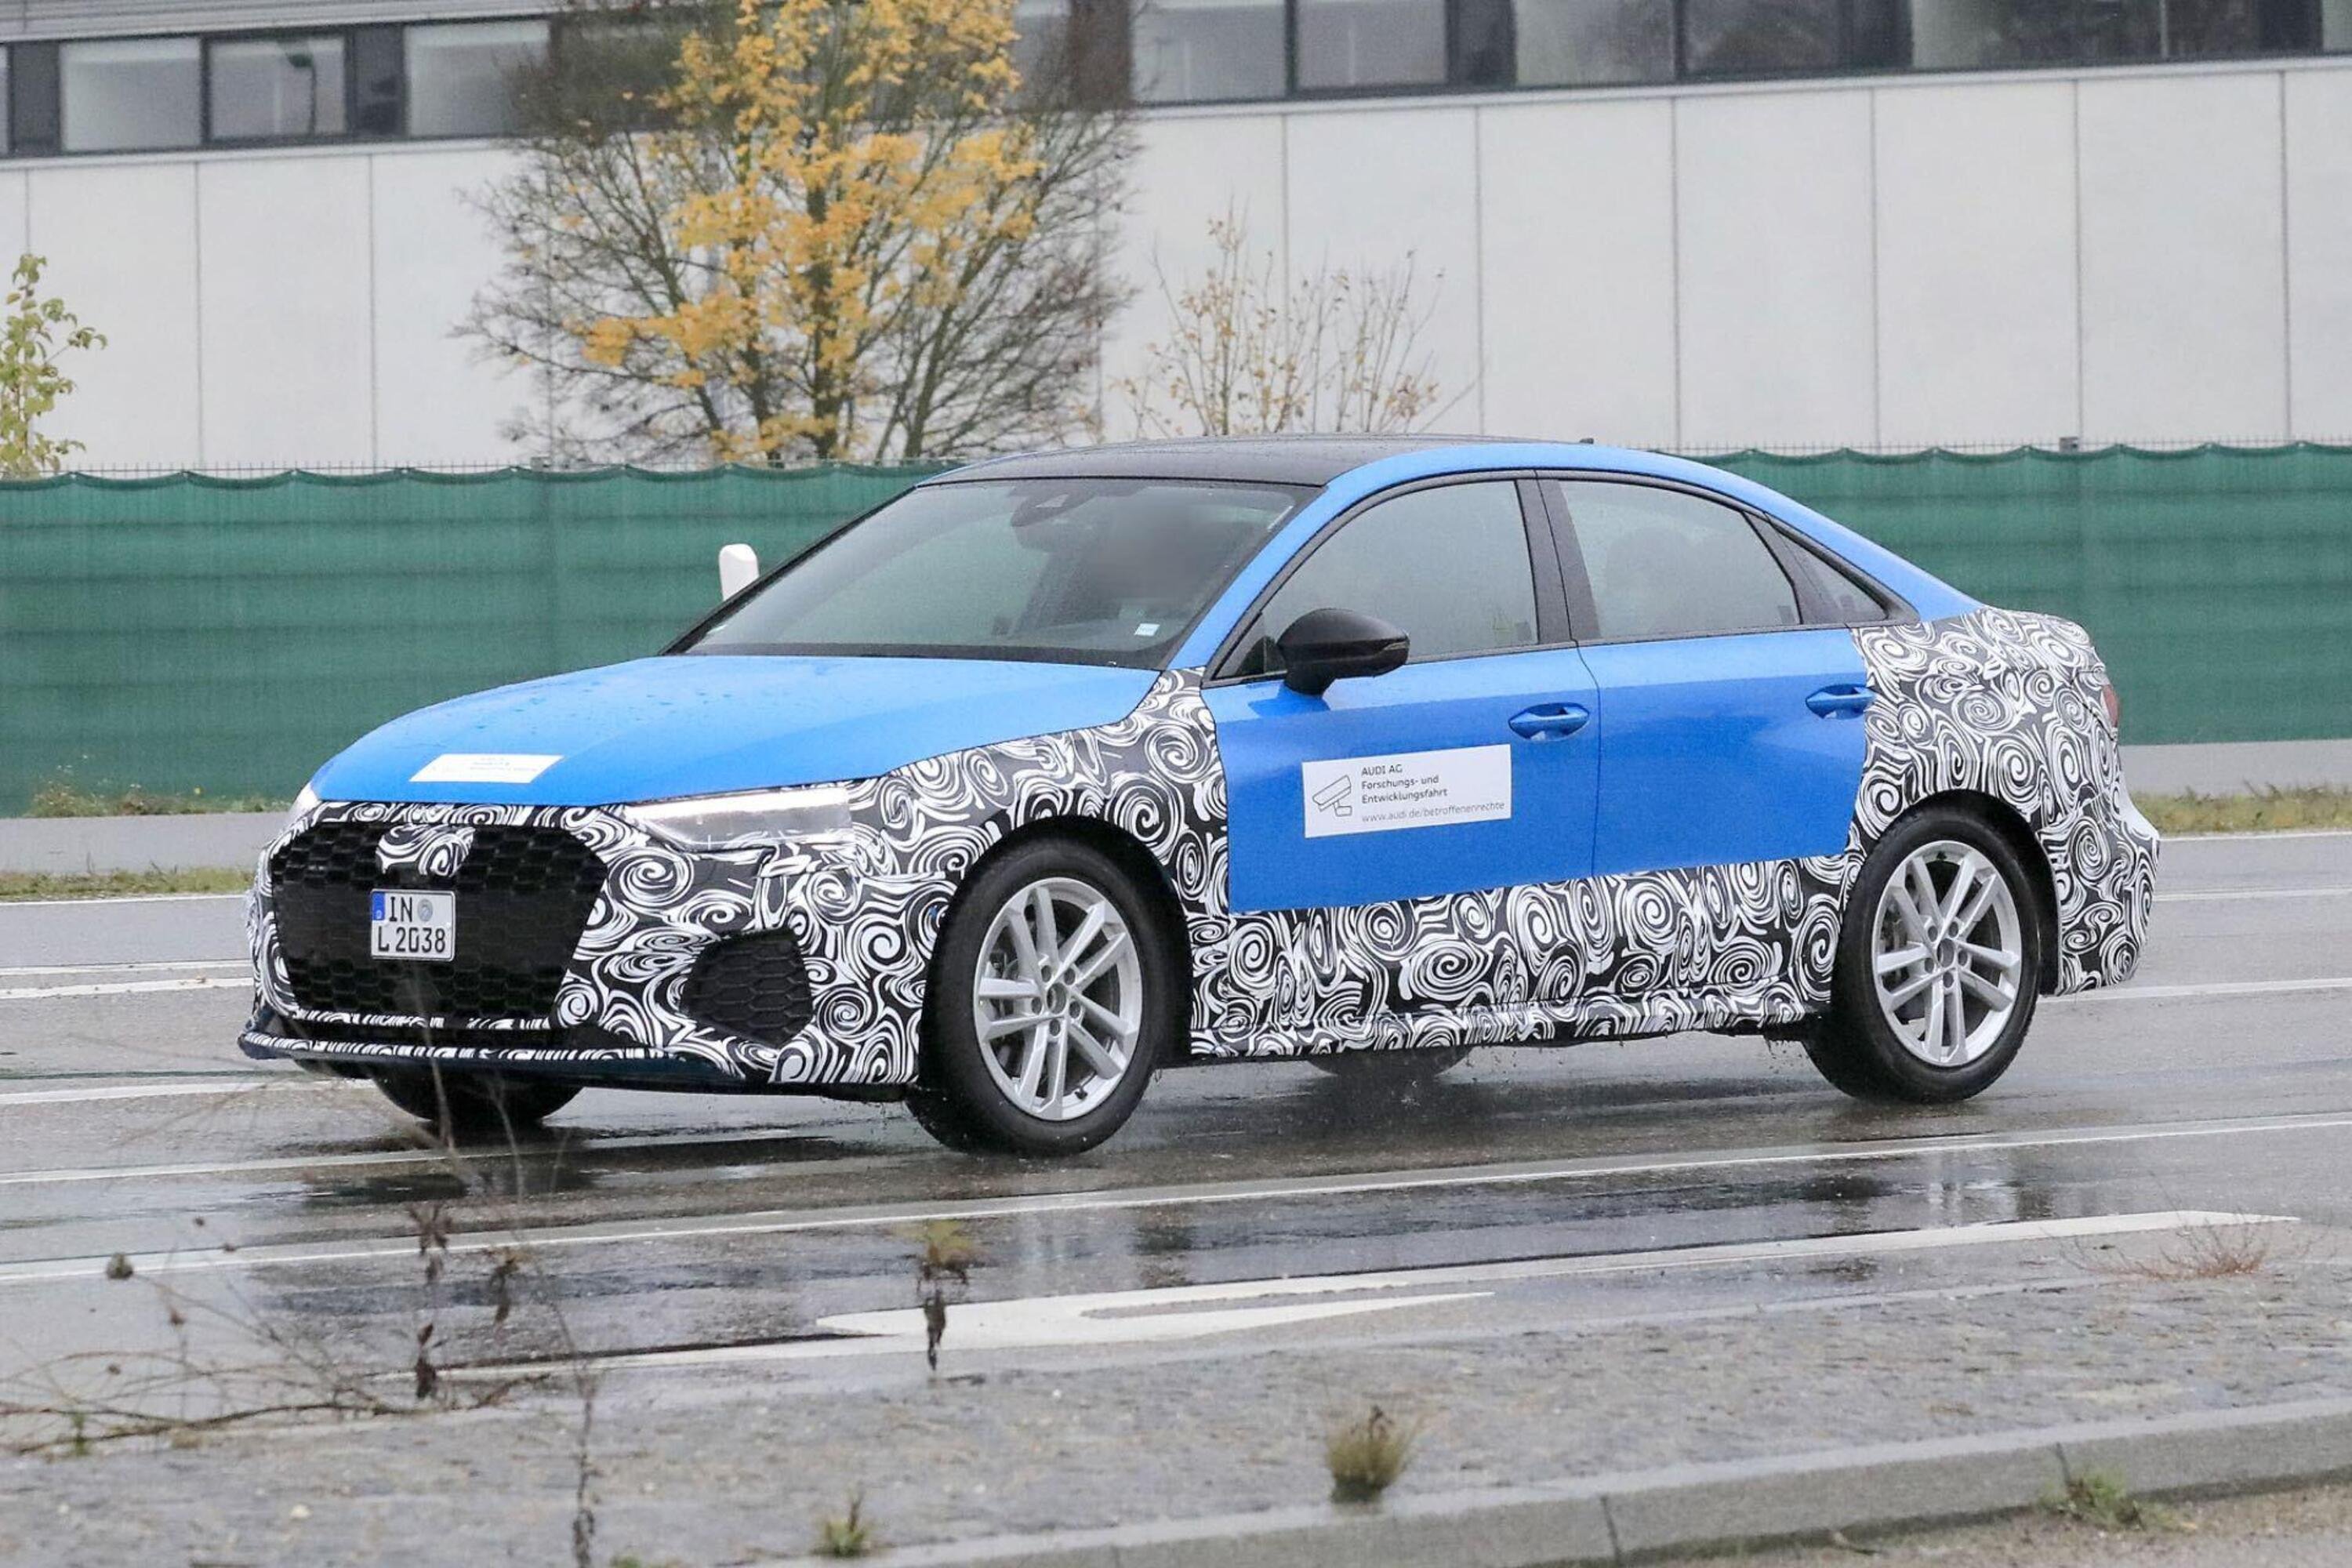 Audi A3, ecco le foto spia del nuovo Facelift